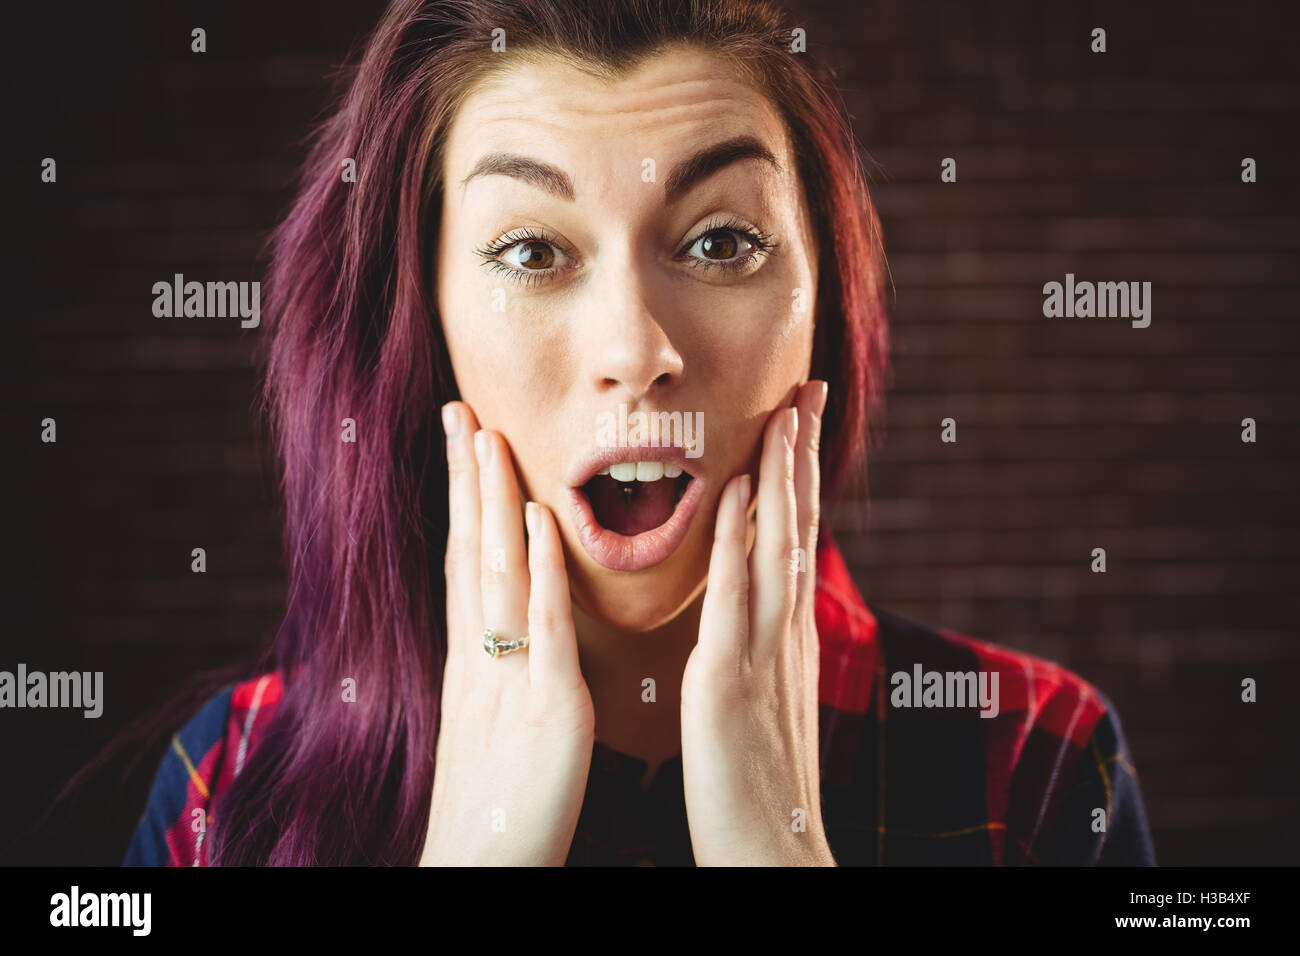 Young woman making a surpris l'expression faciale Banque D'Images